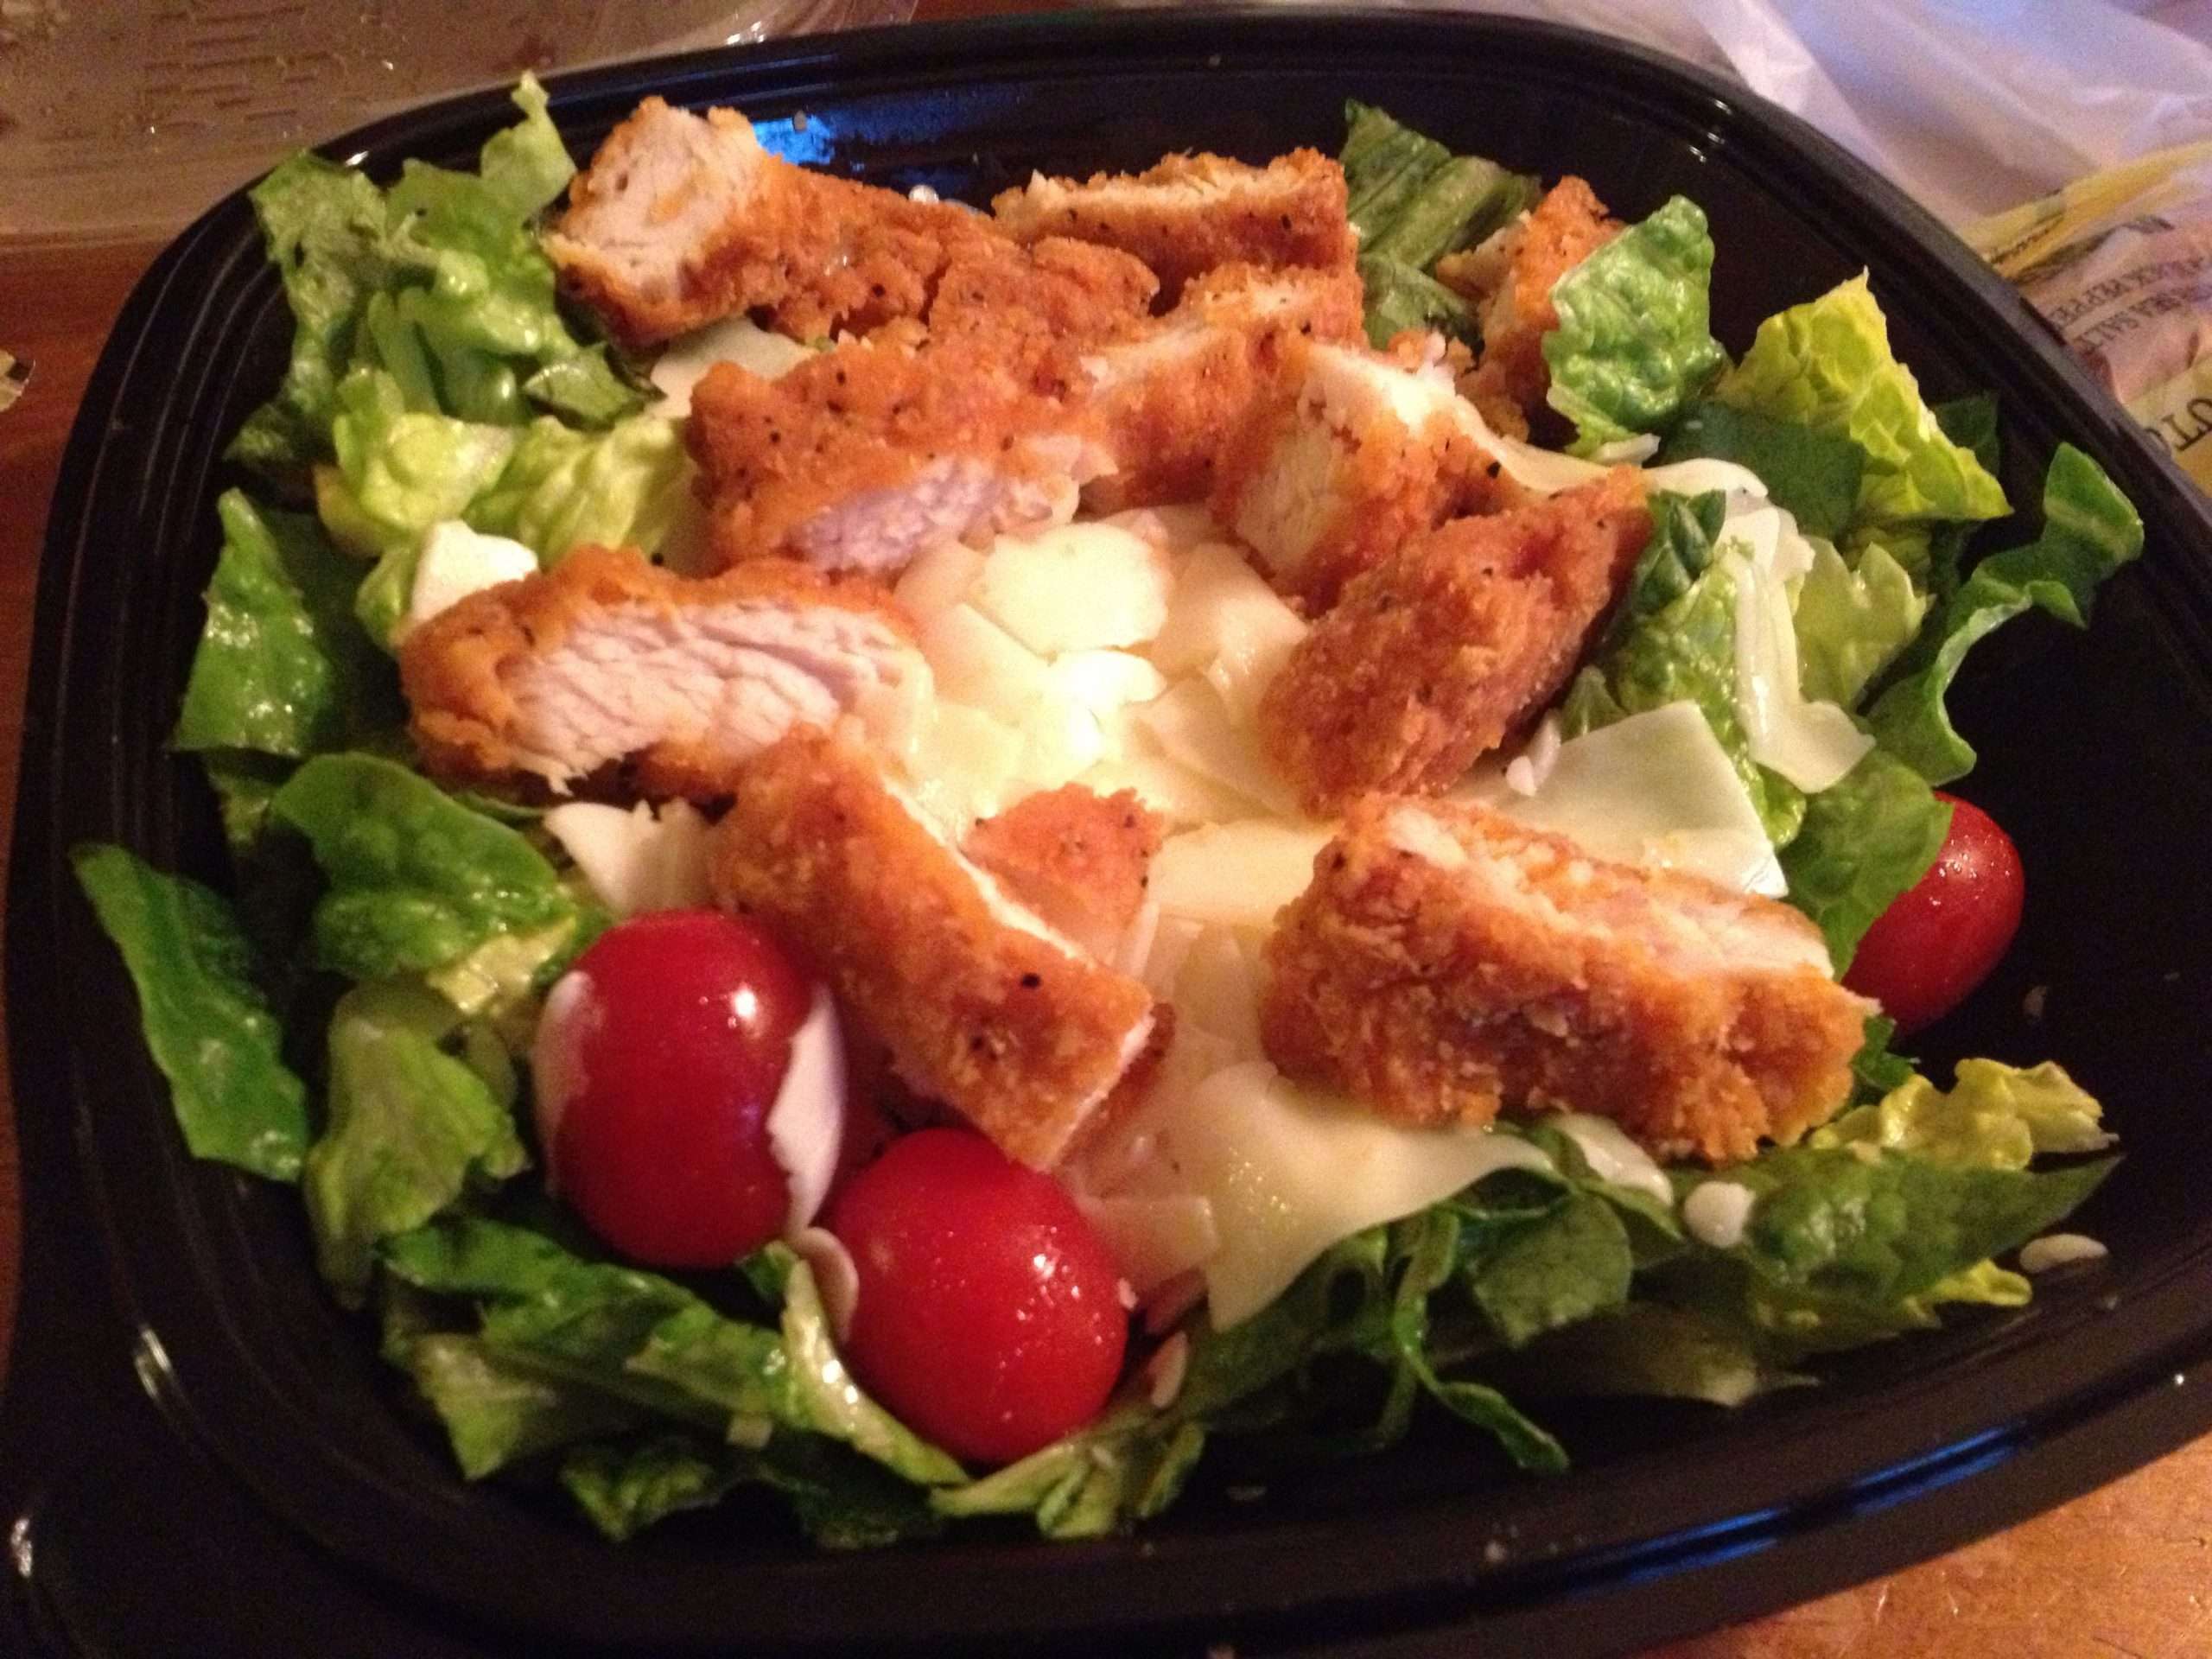 Chicken Caesar salad from Wendy